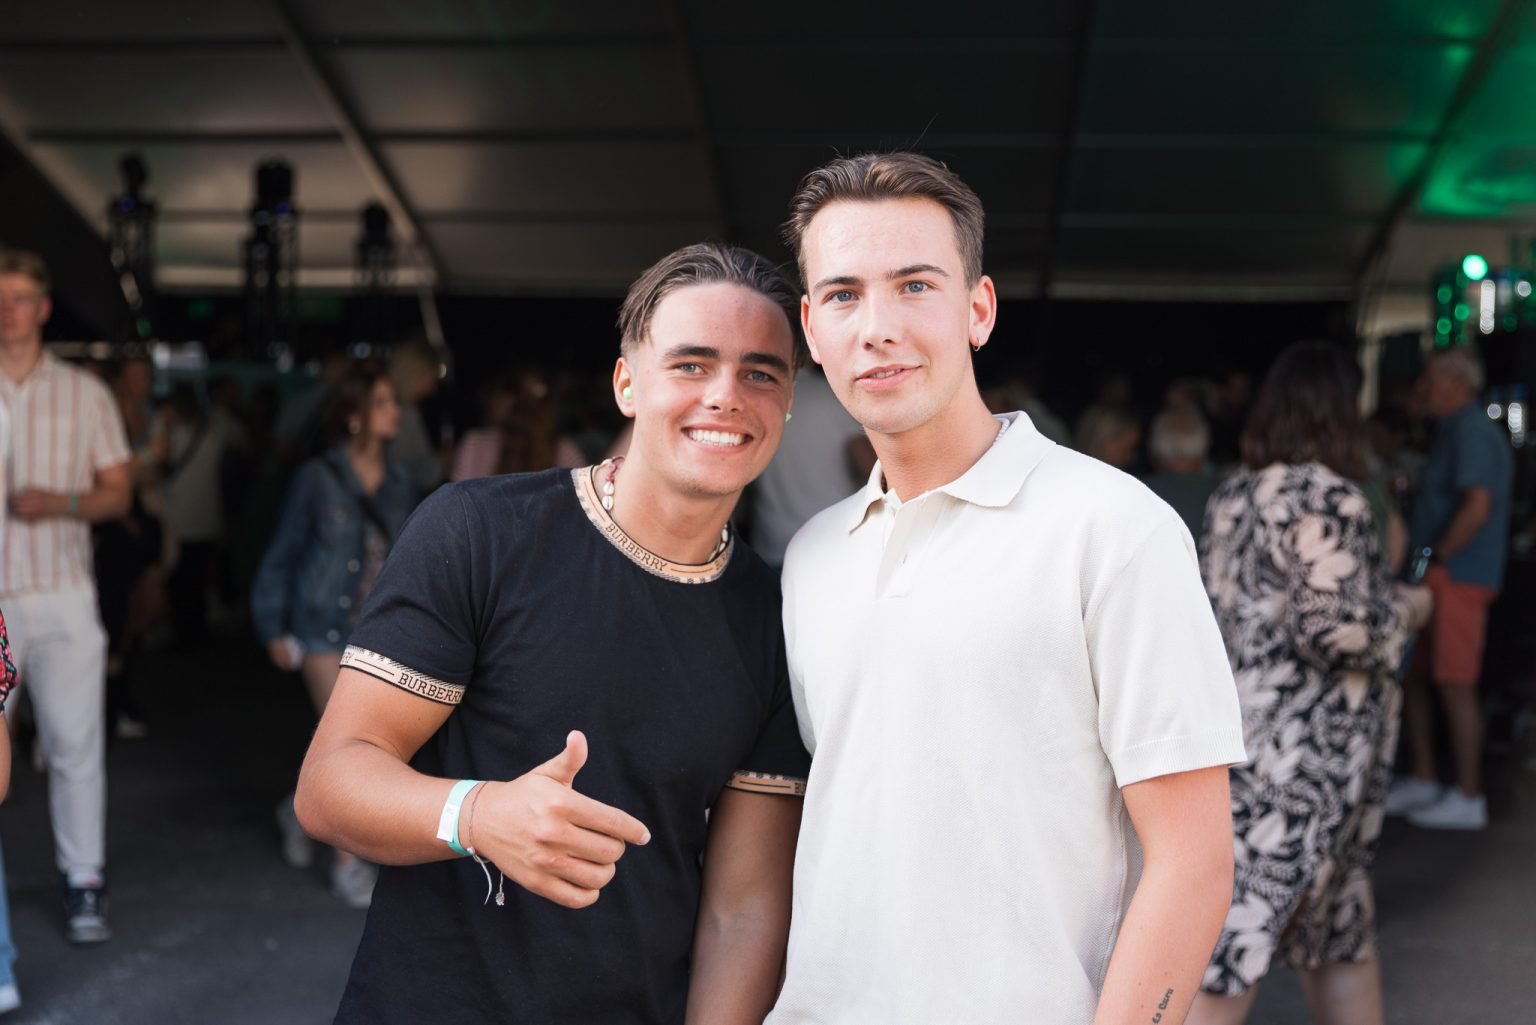 to gutter med brunt hår og hvit og sort t-skjorte som står ved konsert-området og smiler inn i kameraet.